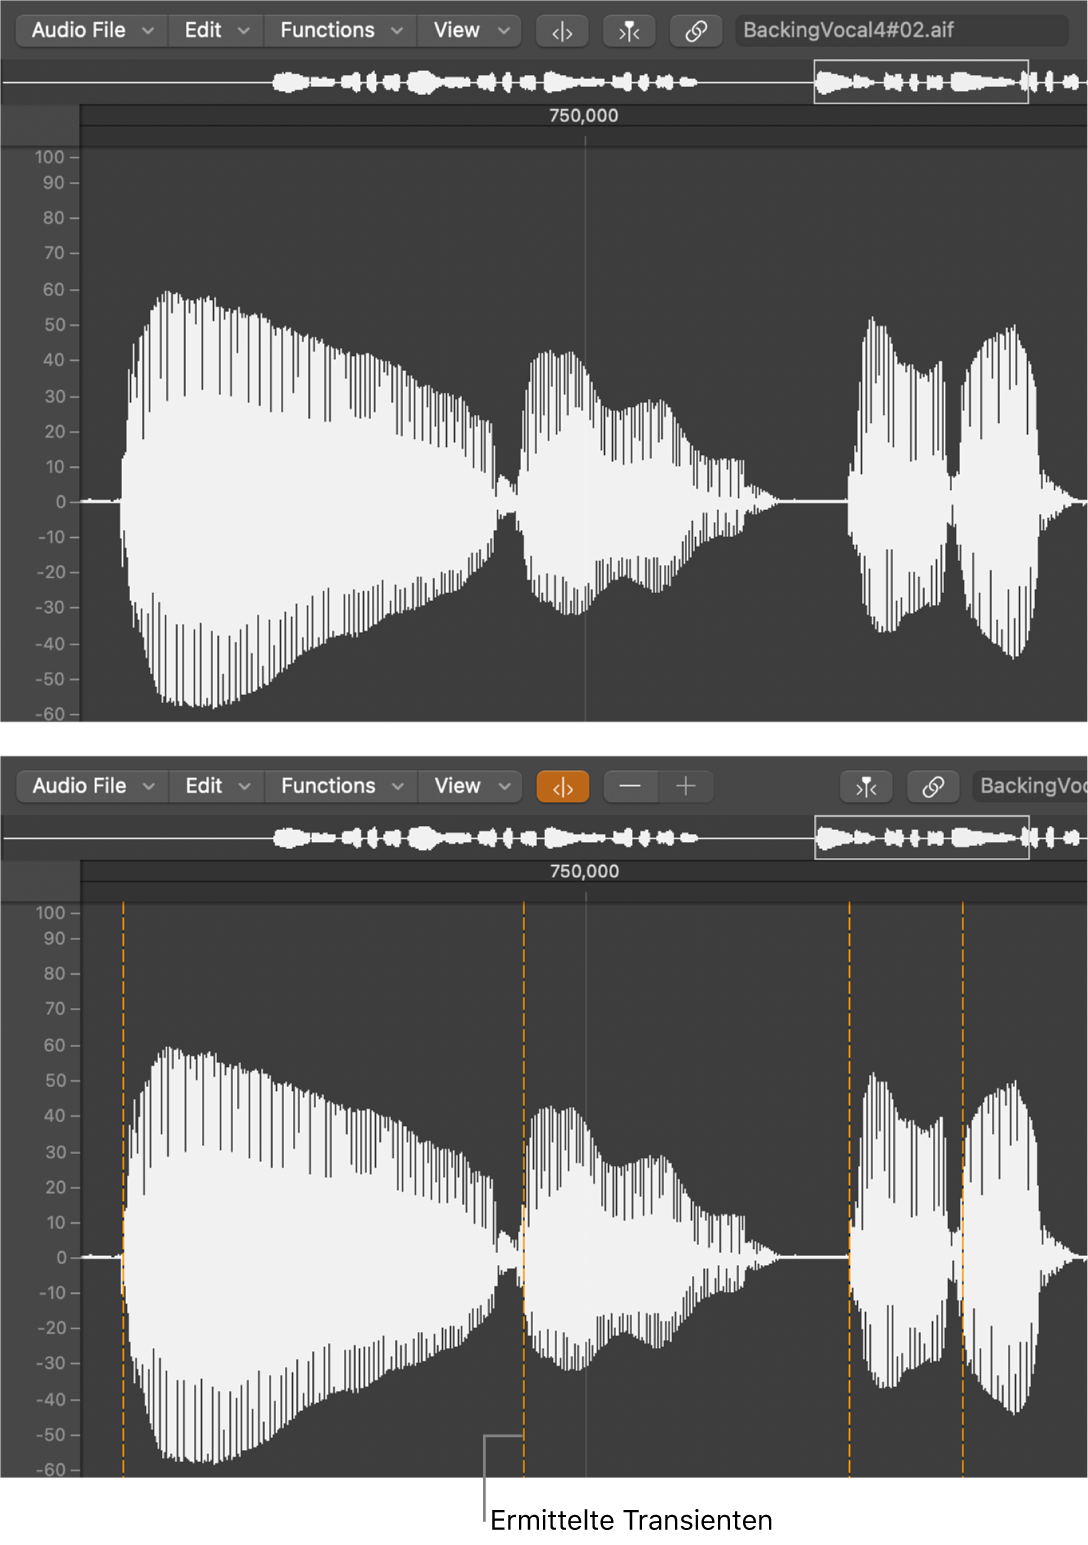 Abbildung. Audioregion im Audiodateieditor ohne und mit Transienten